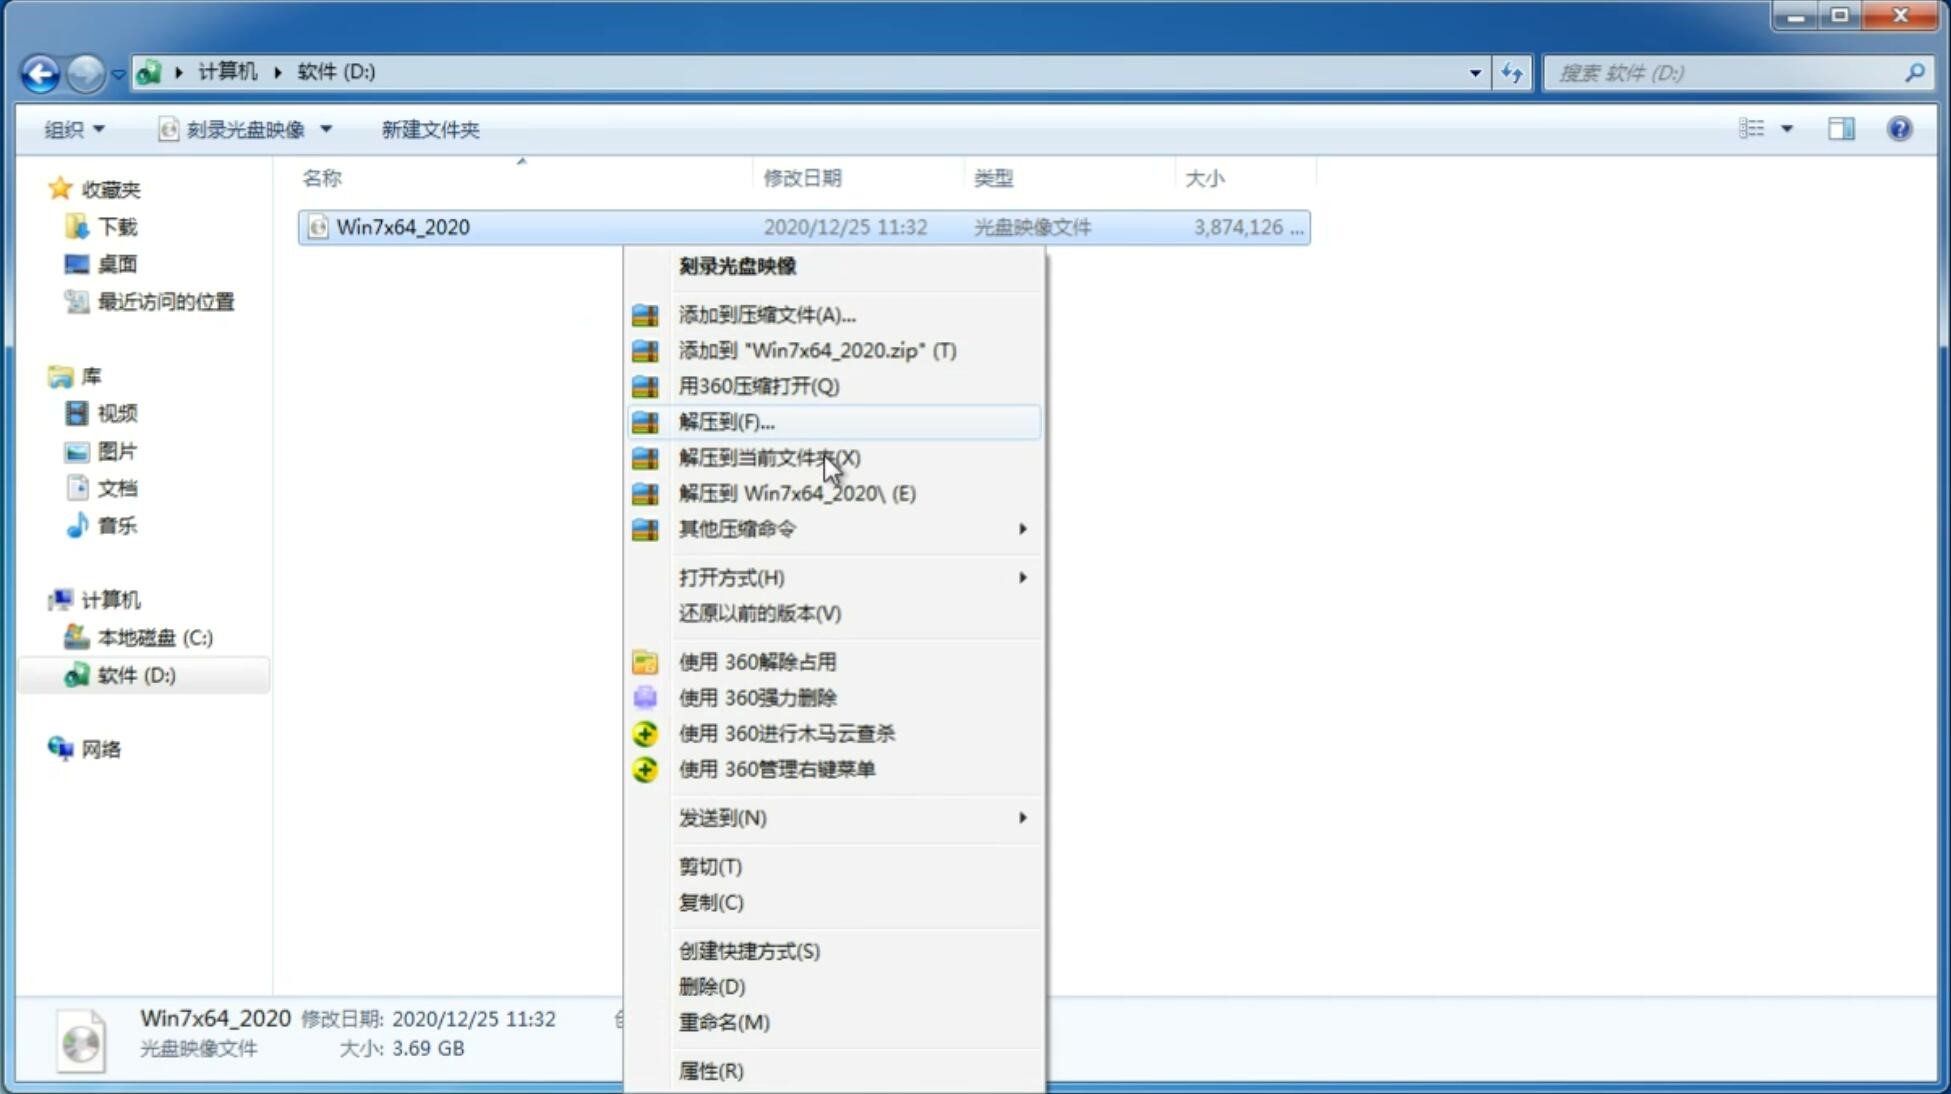 最新技术员联盟系统  windows7 X32 SP1 纯净中文旗舰版系统下载 V2021.09(1)